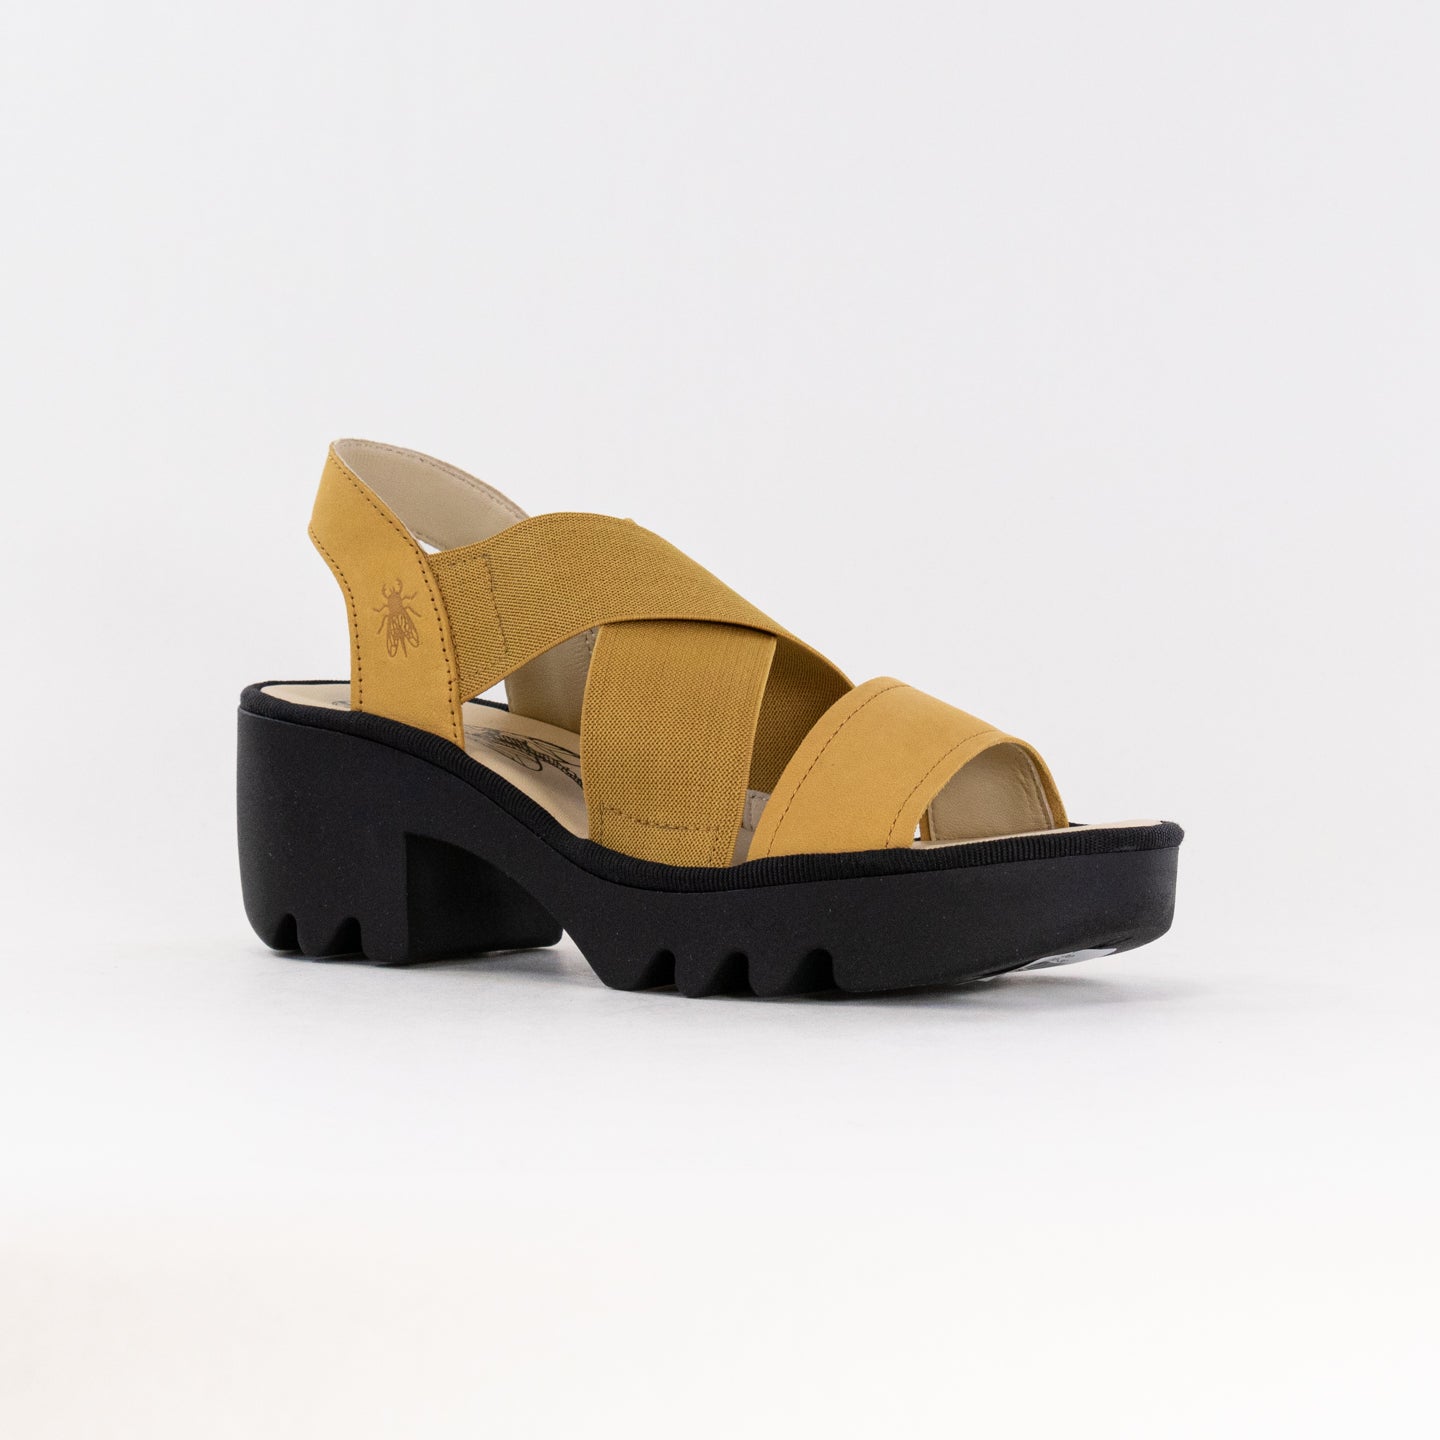 FLY London Crossover Sandals TAJI502FLY (Women's) - Bumblebee